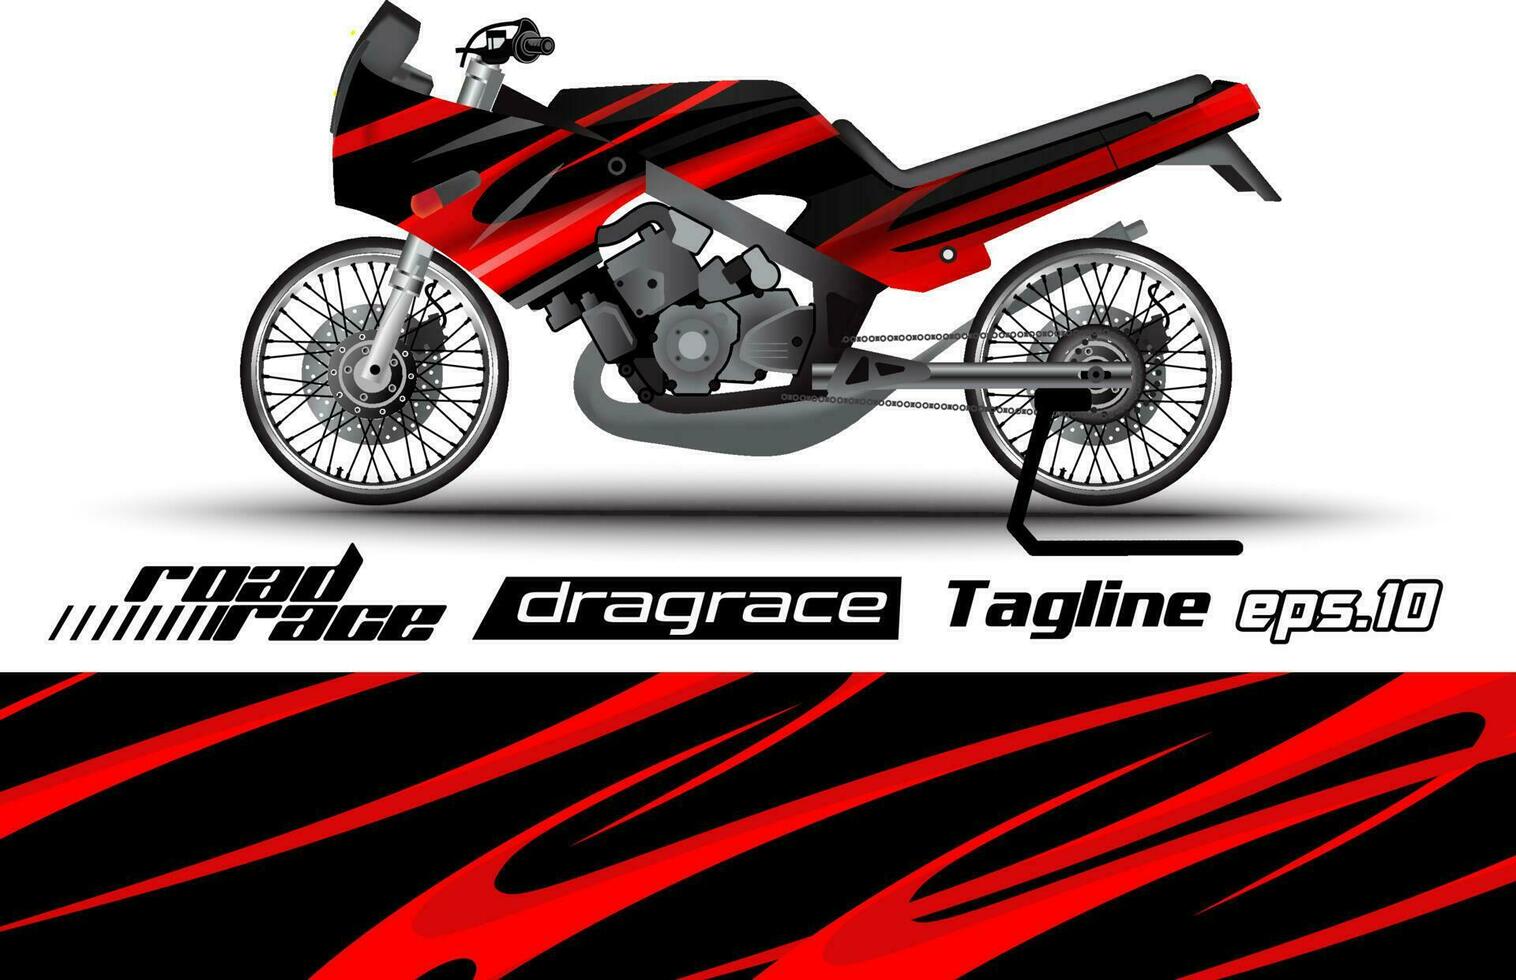 Vollvektor-Drag-Racing-Motorradaufkleber-Verpackungsdesign eps.10 vektor